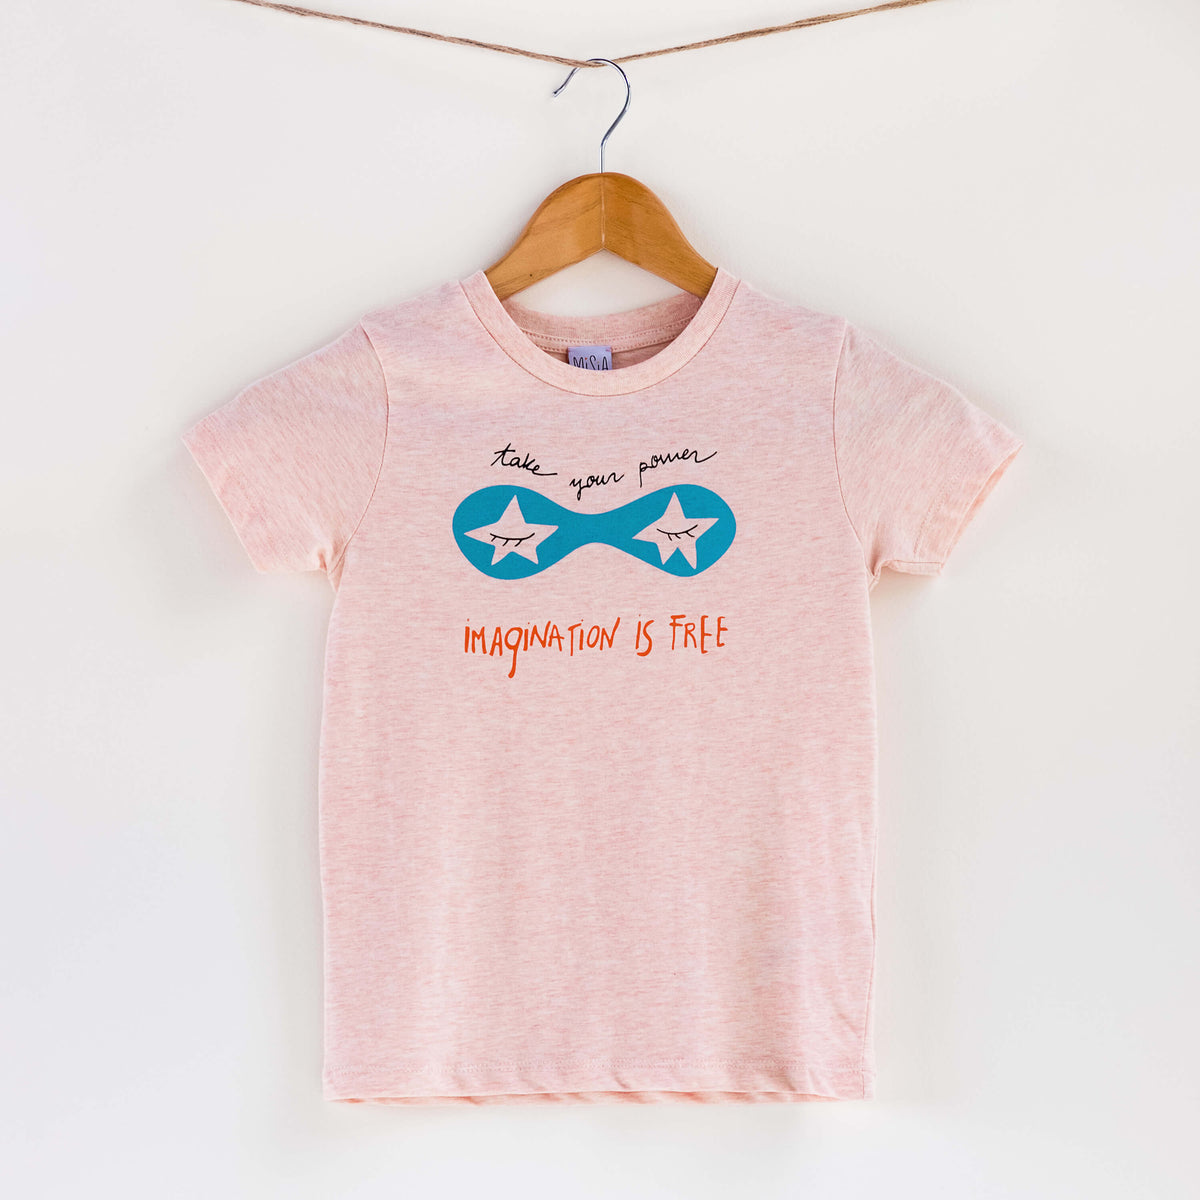 Camiseta rosa de algodón orgánico para niños, estampado a mano con tintas ecológicas. Serigrafía en color negro, azul y naranja. Modelo unisex.